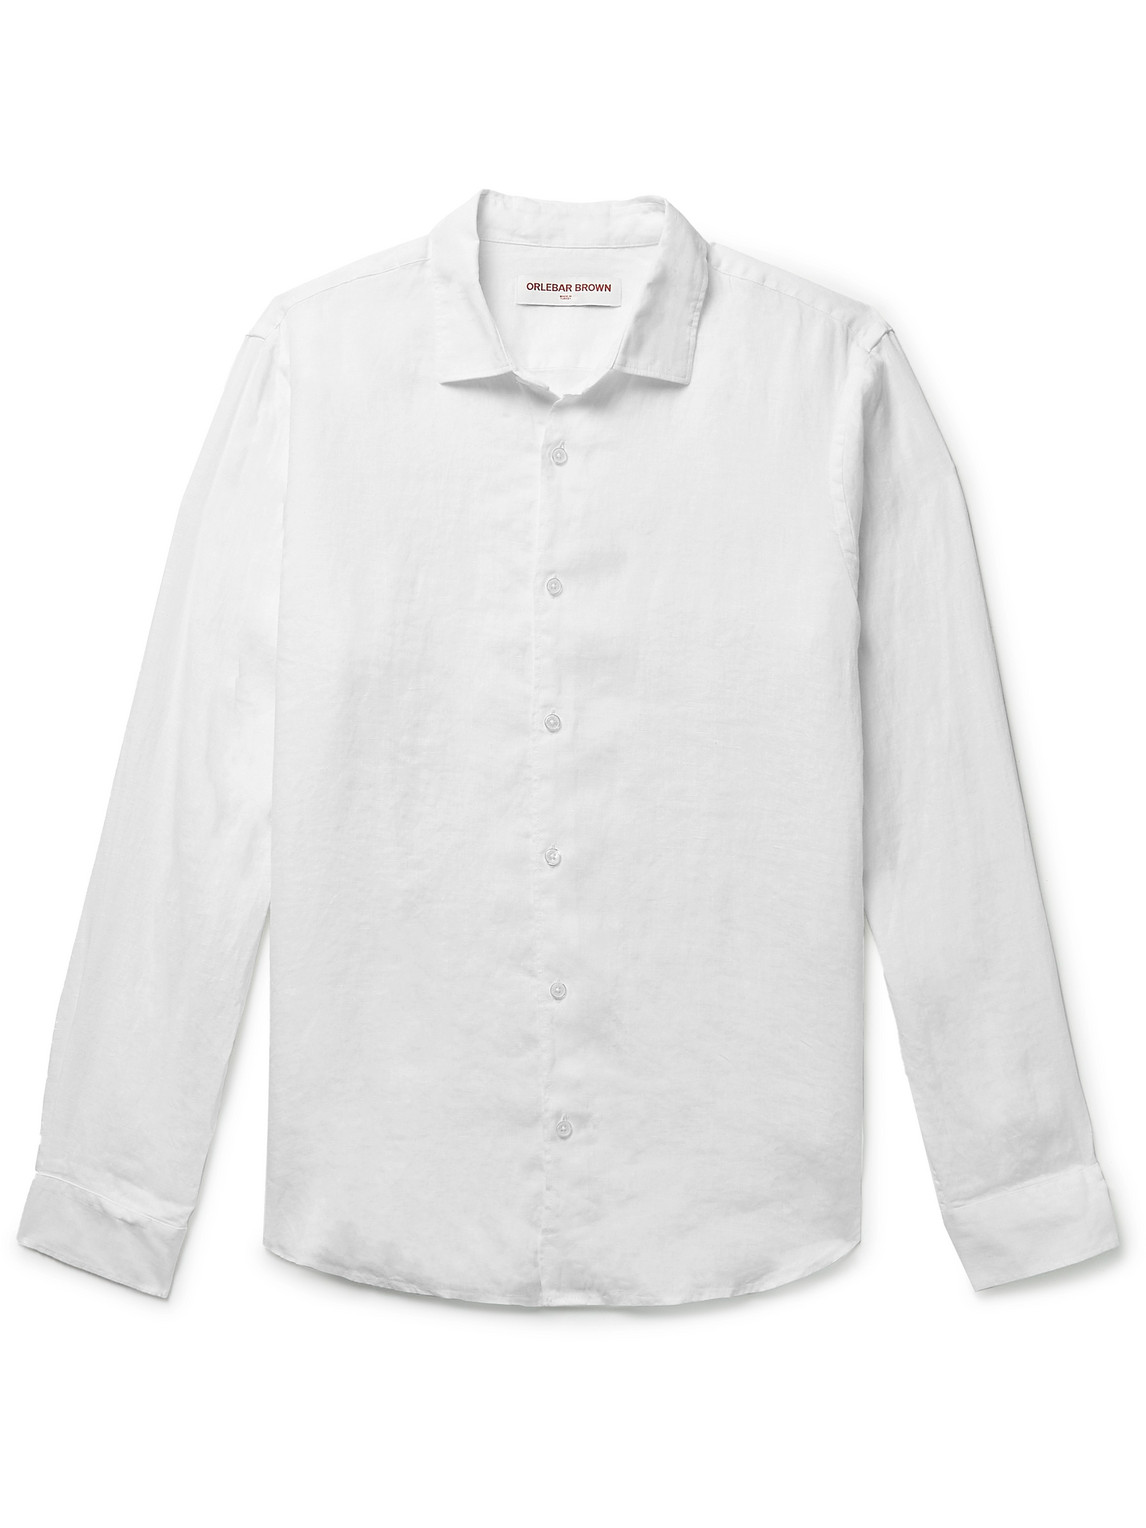 Orlebar Brown - Giles Linen Shirt - Men - White - L von Orlebar Brown